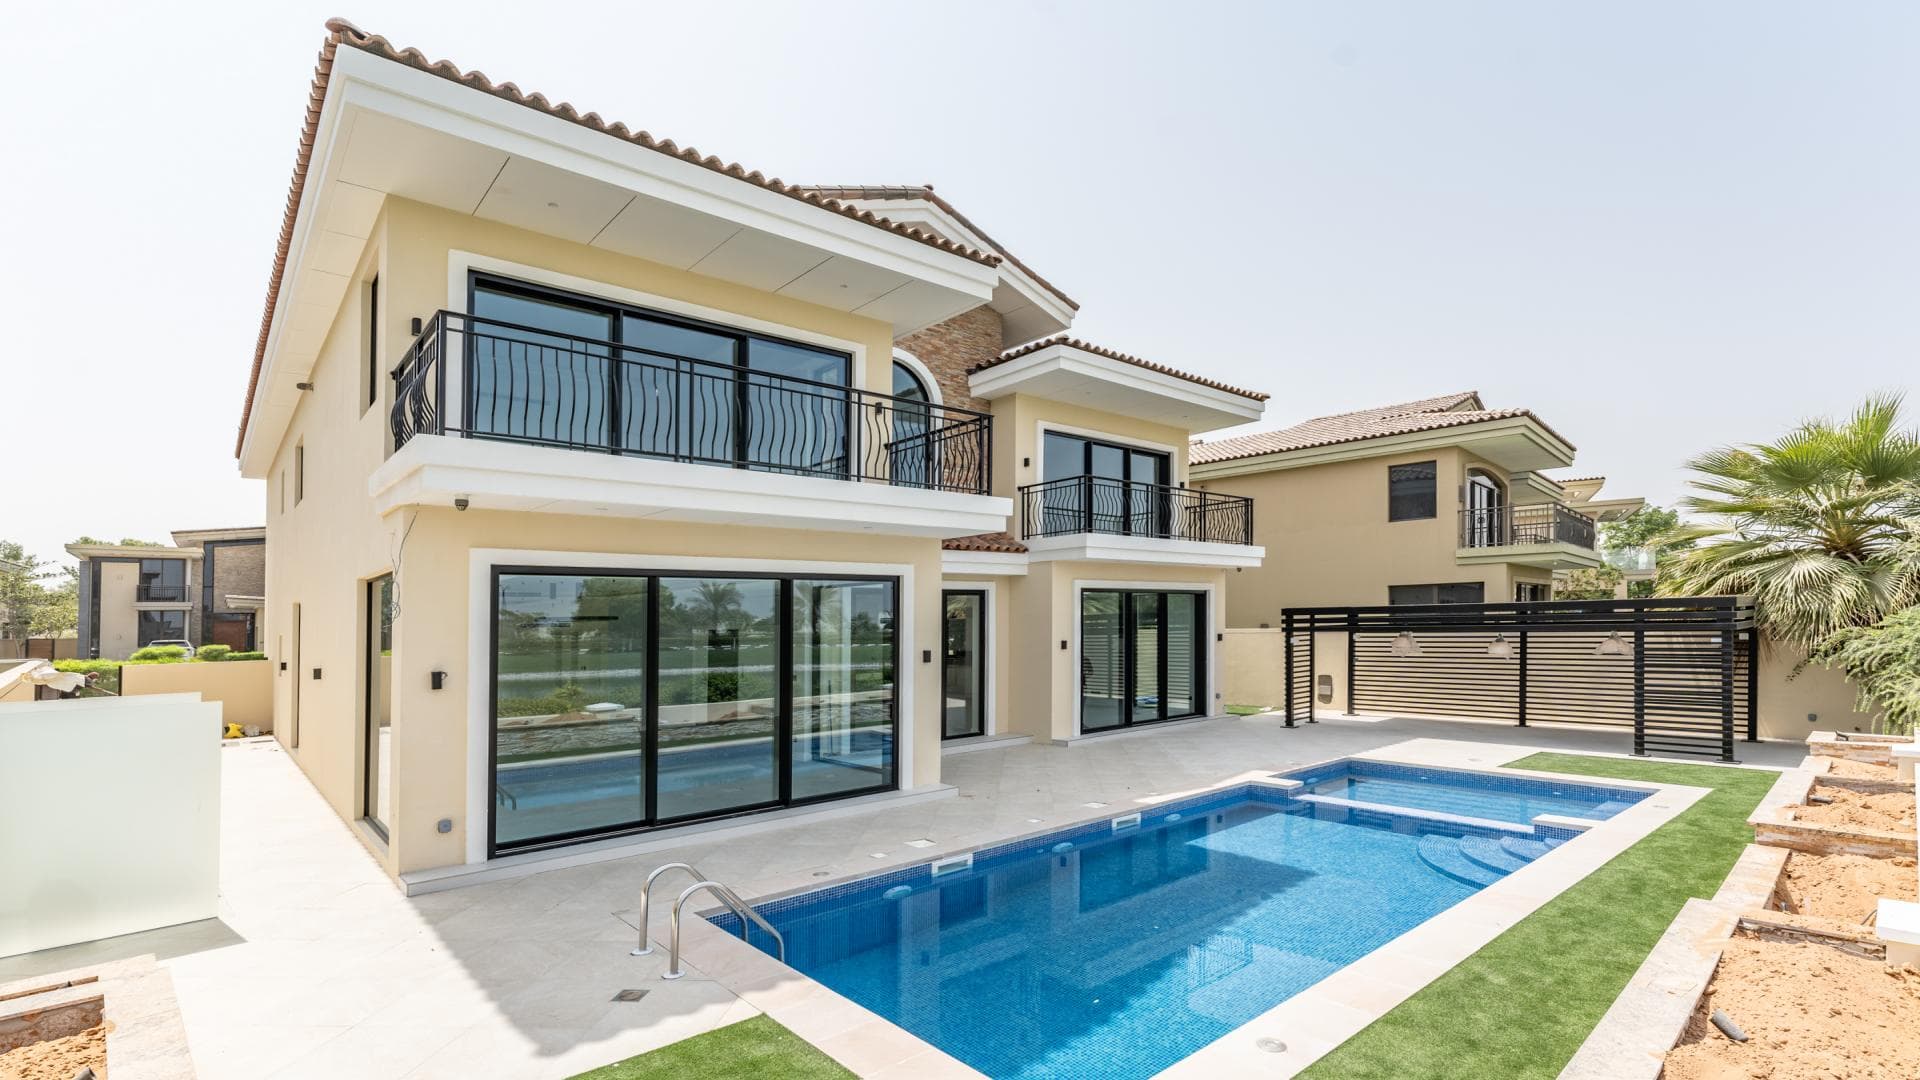 5 Bedroom Villa For Sale Al Thamam 01 Lp37313 Ea7b15a0807f88.jpg